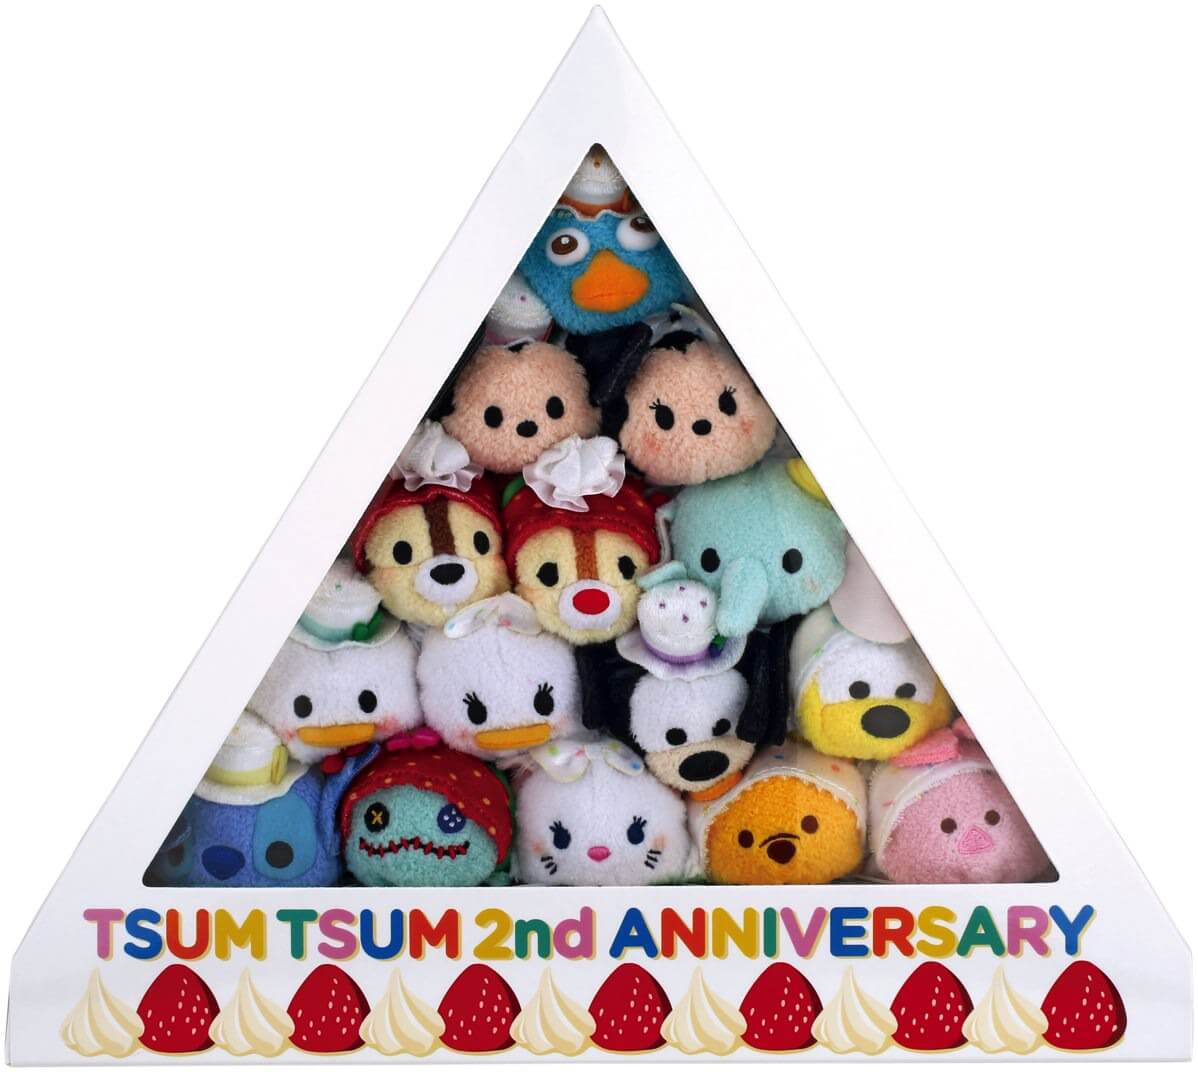 発売2周年アニバーサリーケーキbox Tsum Tsum アルタ限定ツムツムぬいぐるみ第2弾発売 Dtimes